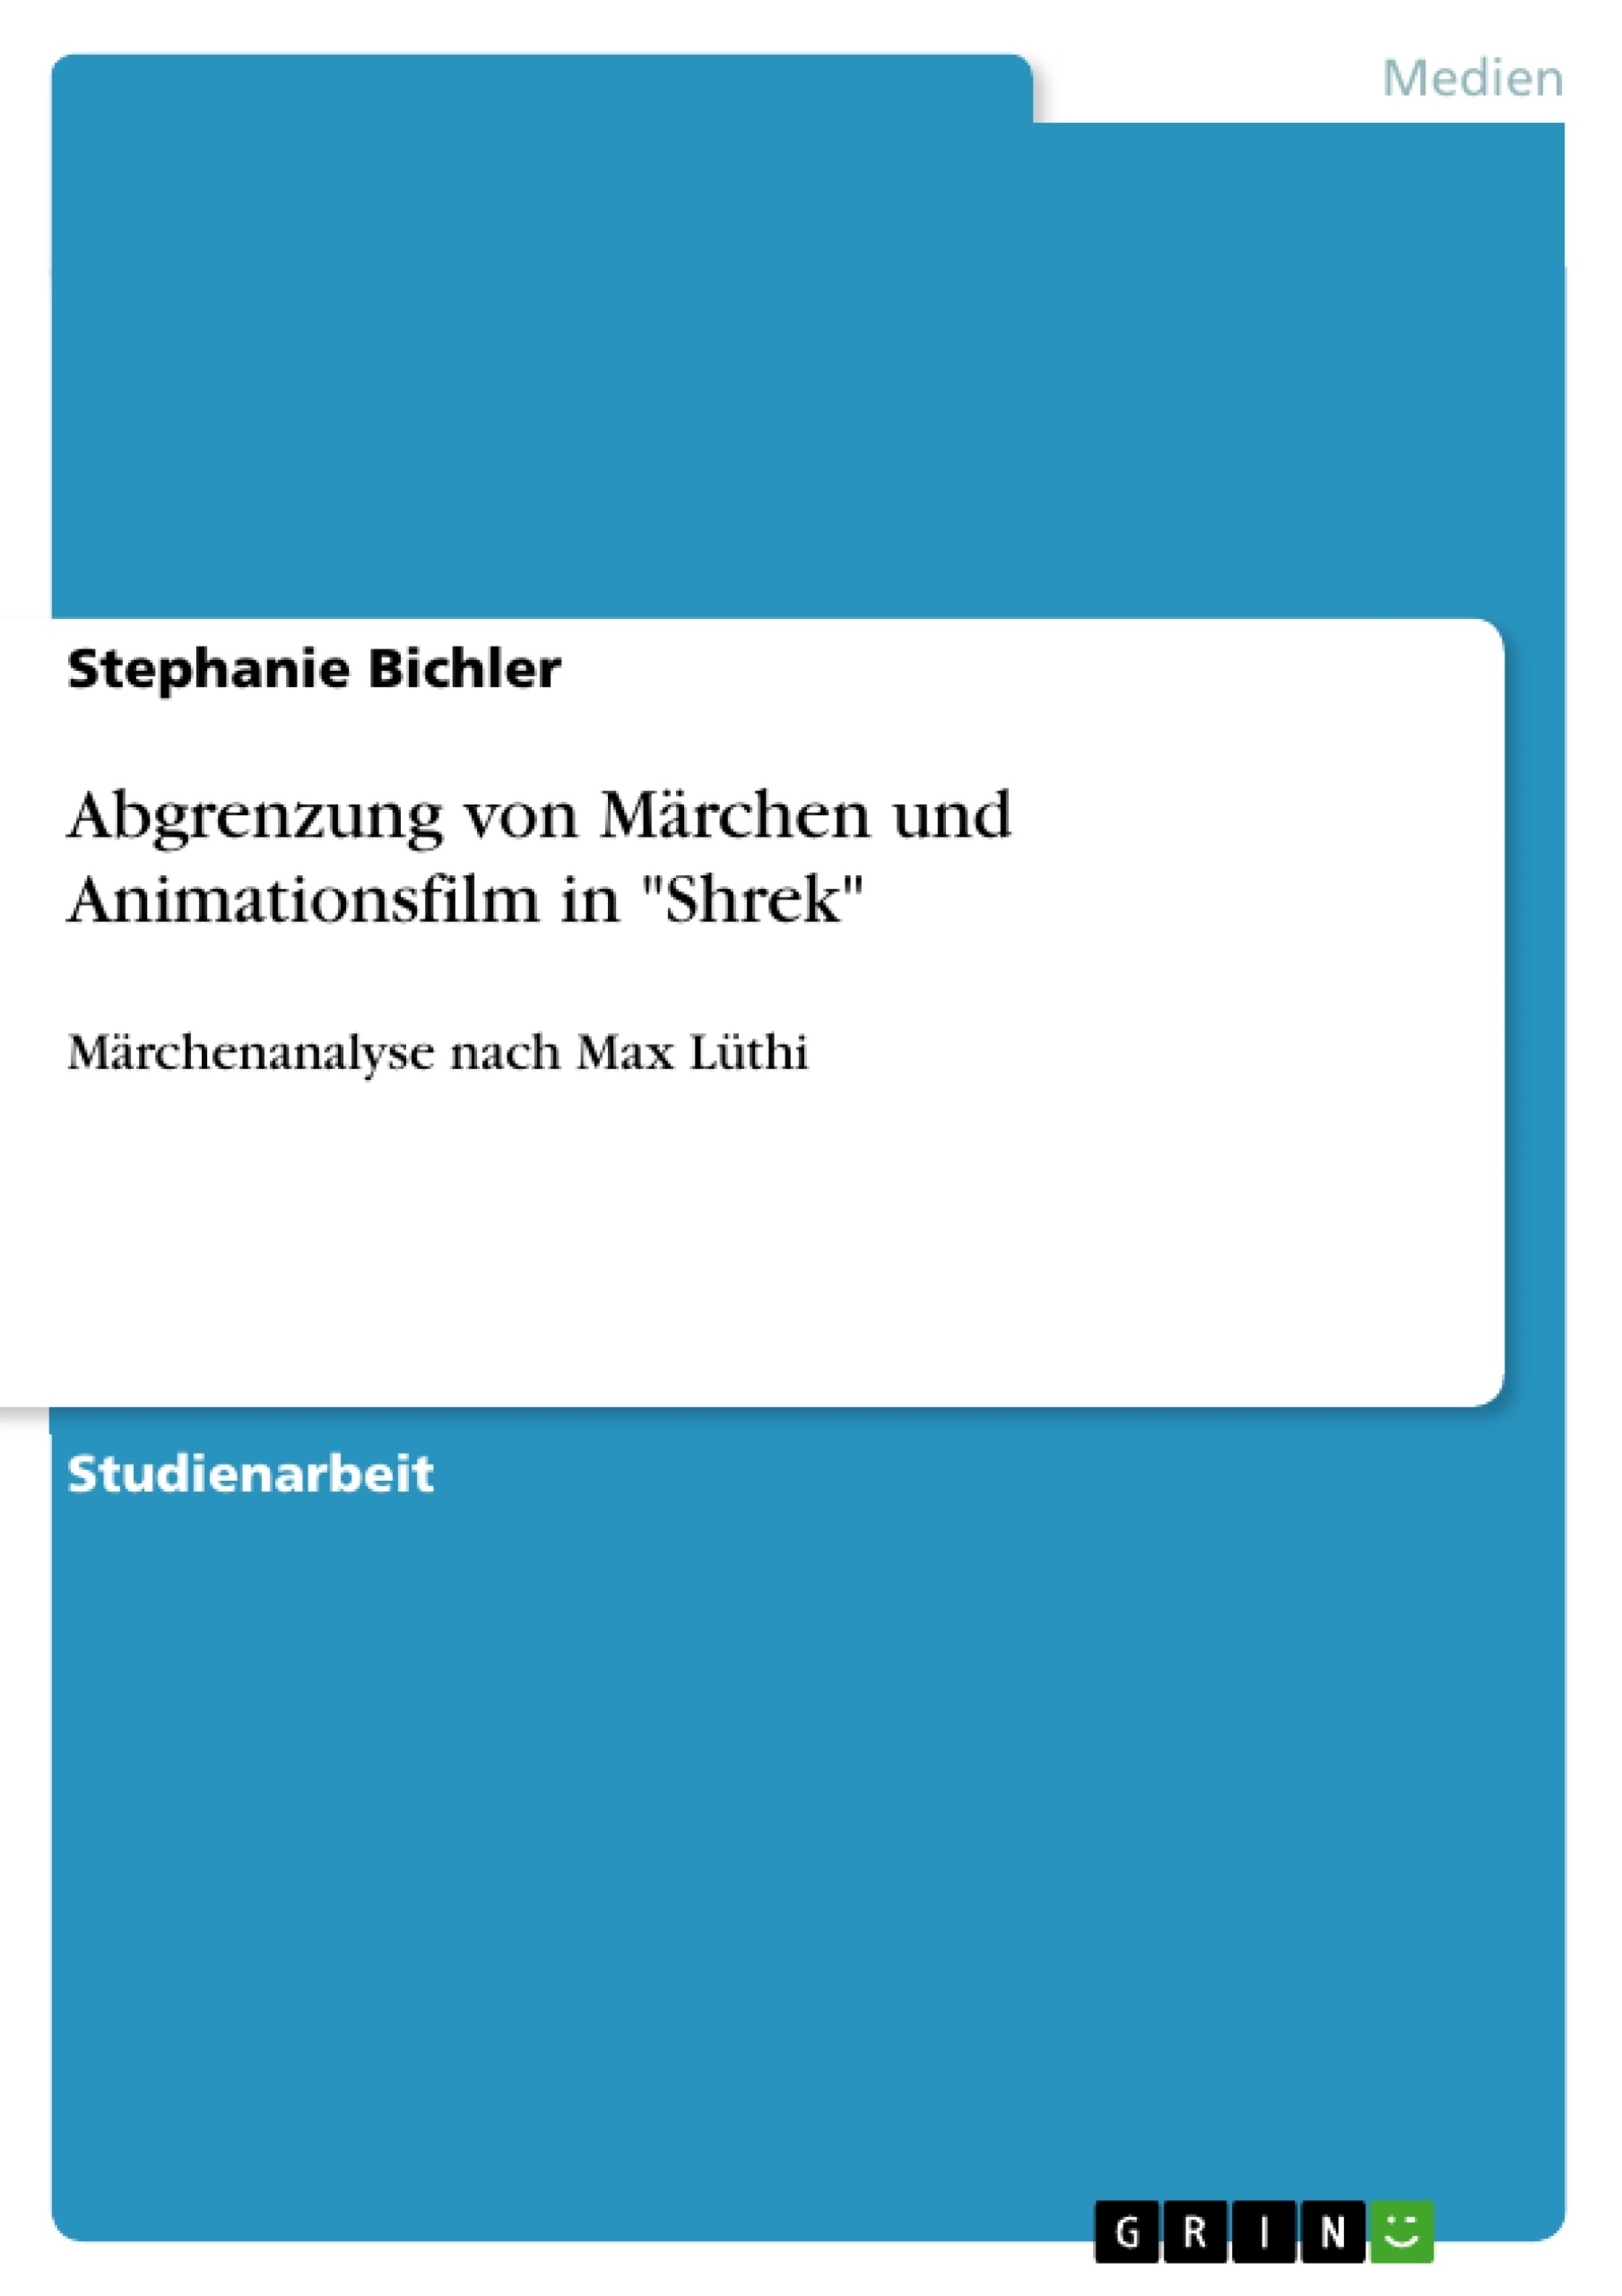 Title: Abgrenzung von Märchen und Animationsfilm in "Shrek"